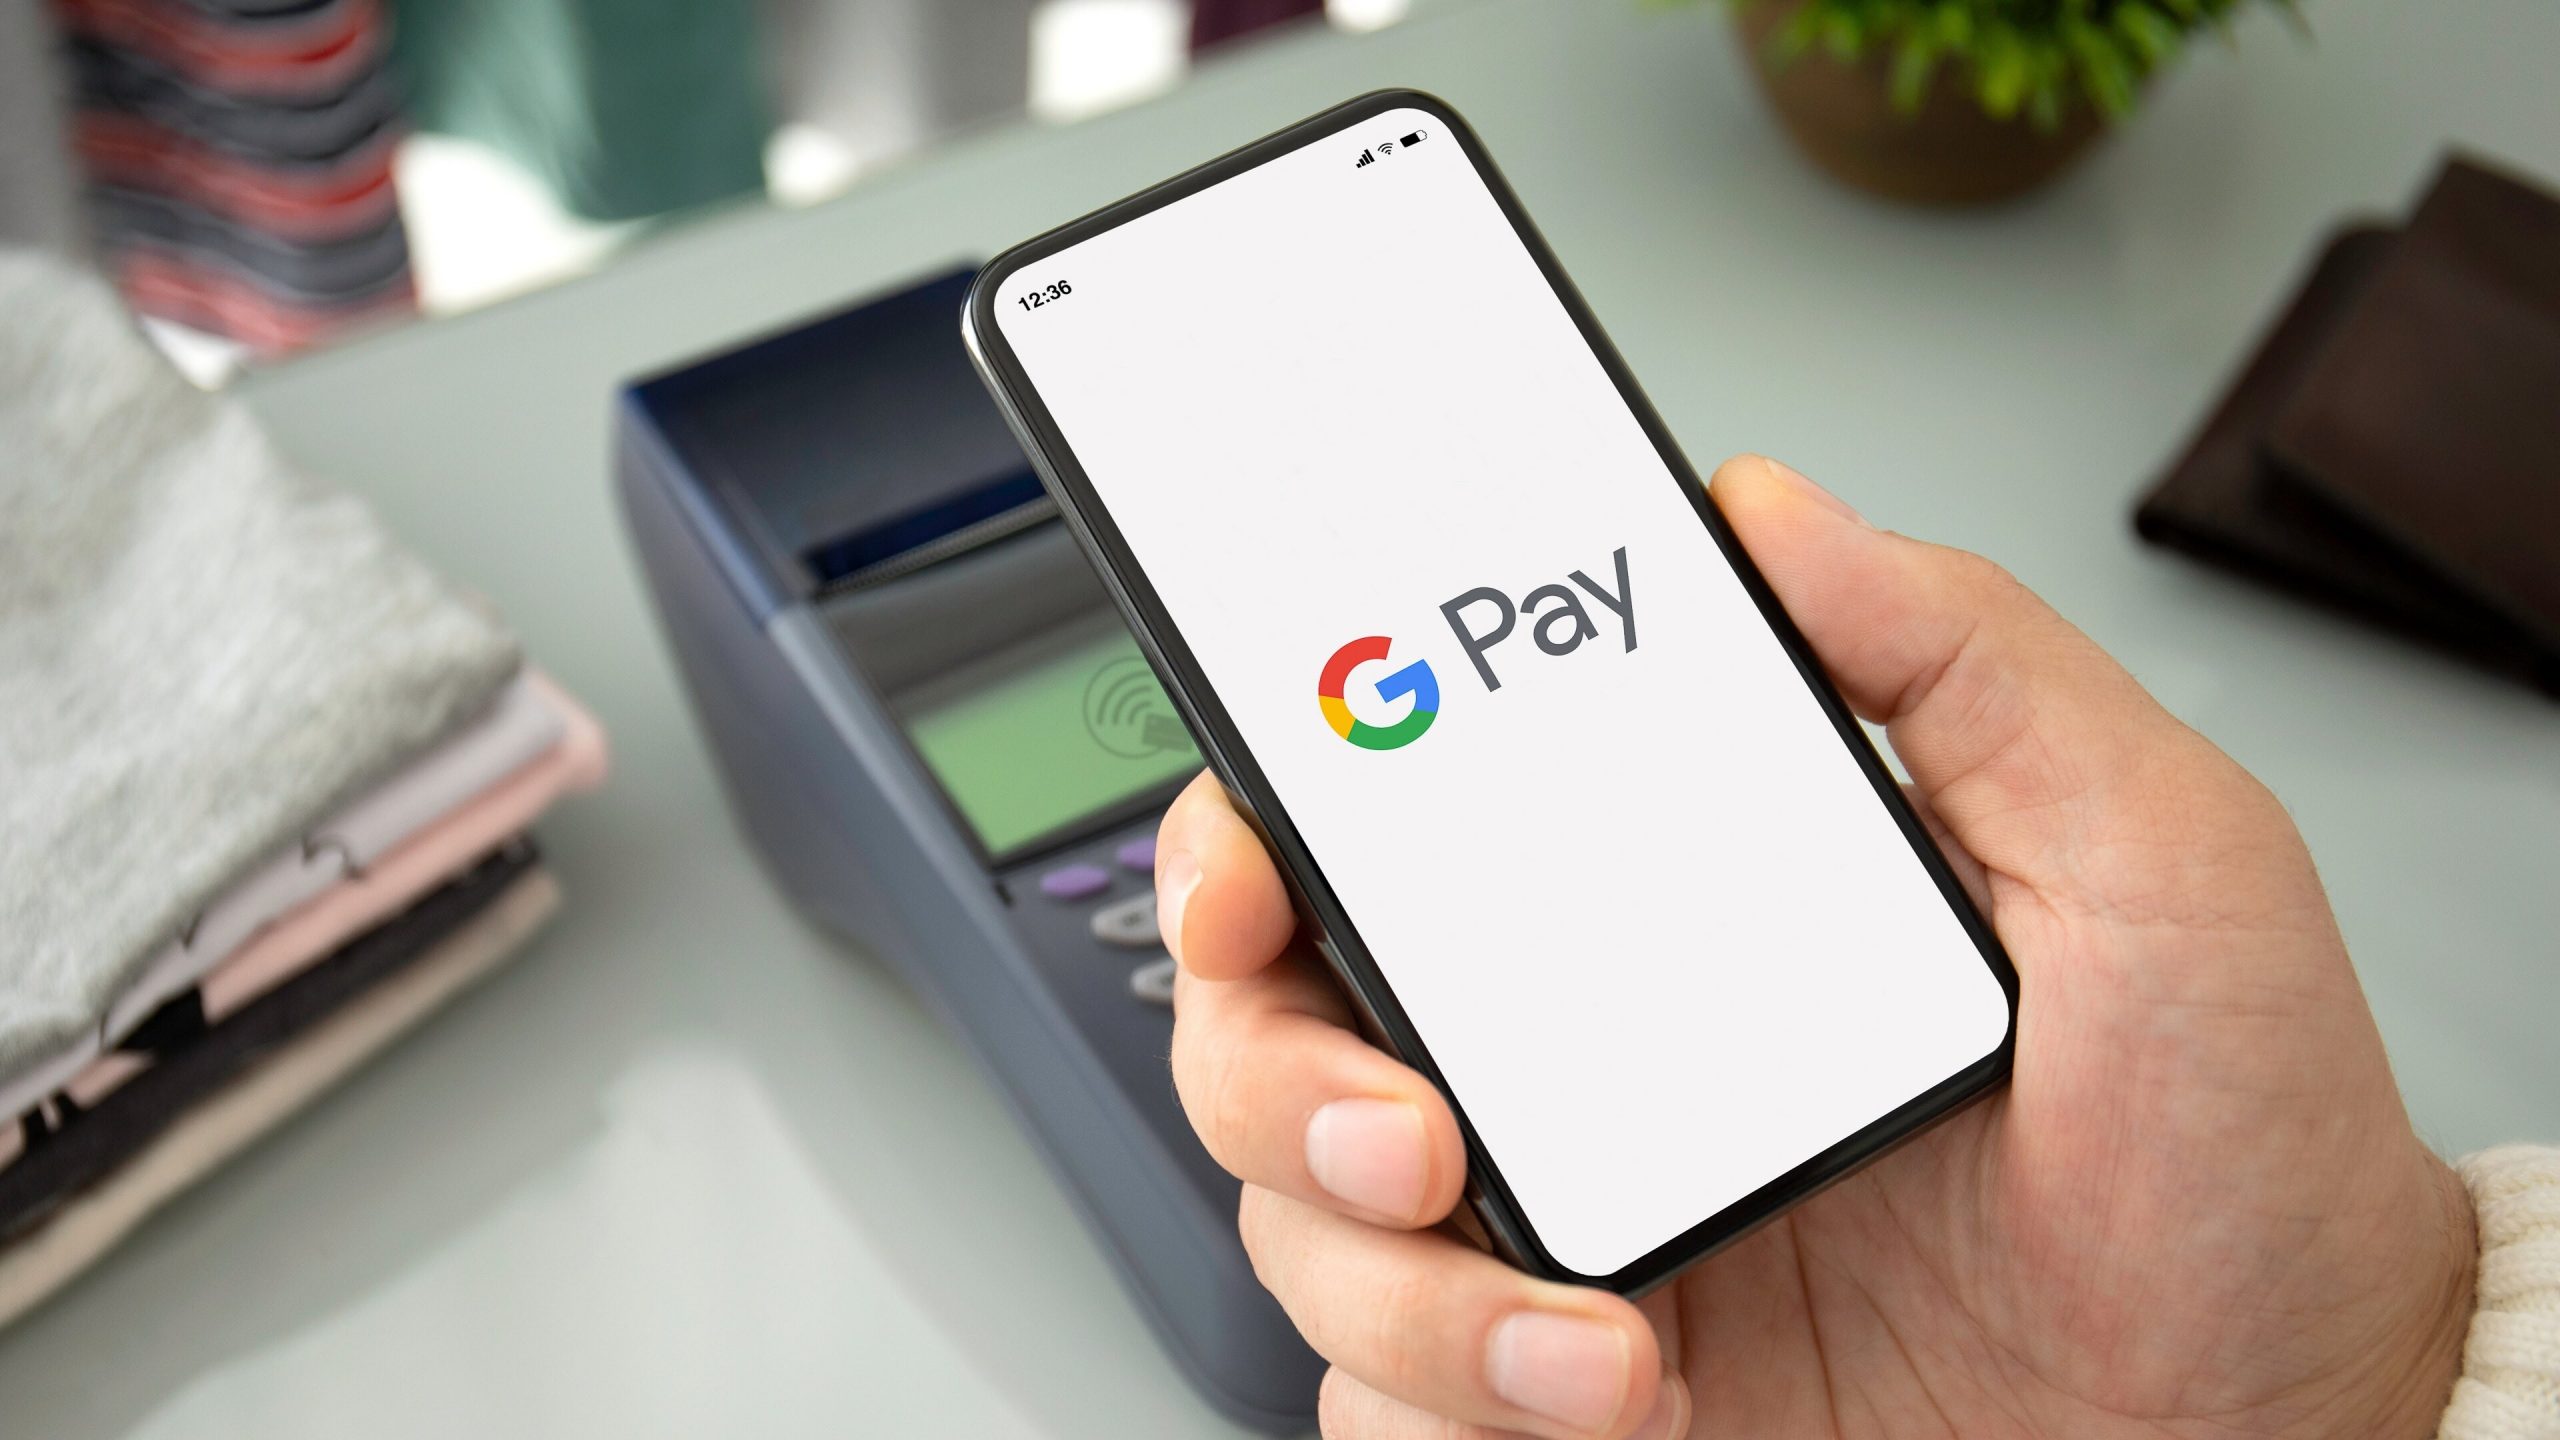 H Alpha Bank φέρνει τις ανέπαφες πληρωμές μέσω Google Pay στις κάρτες της